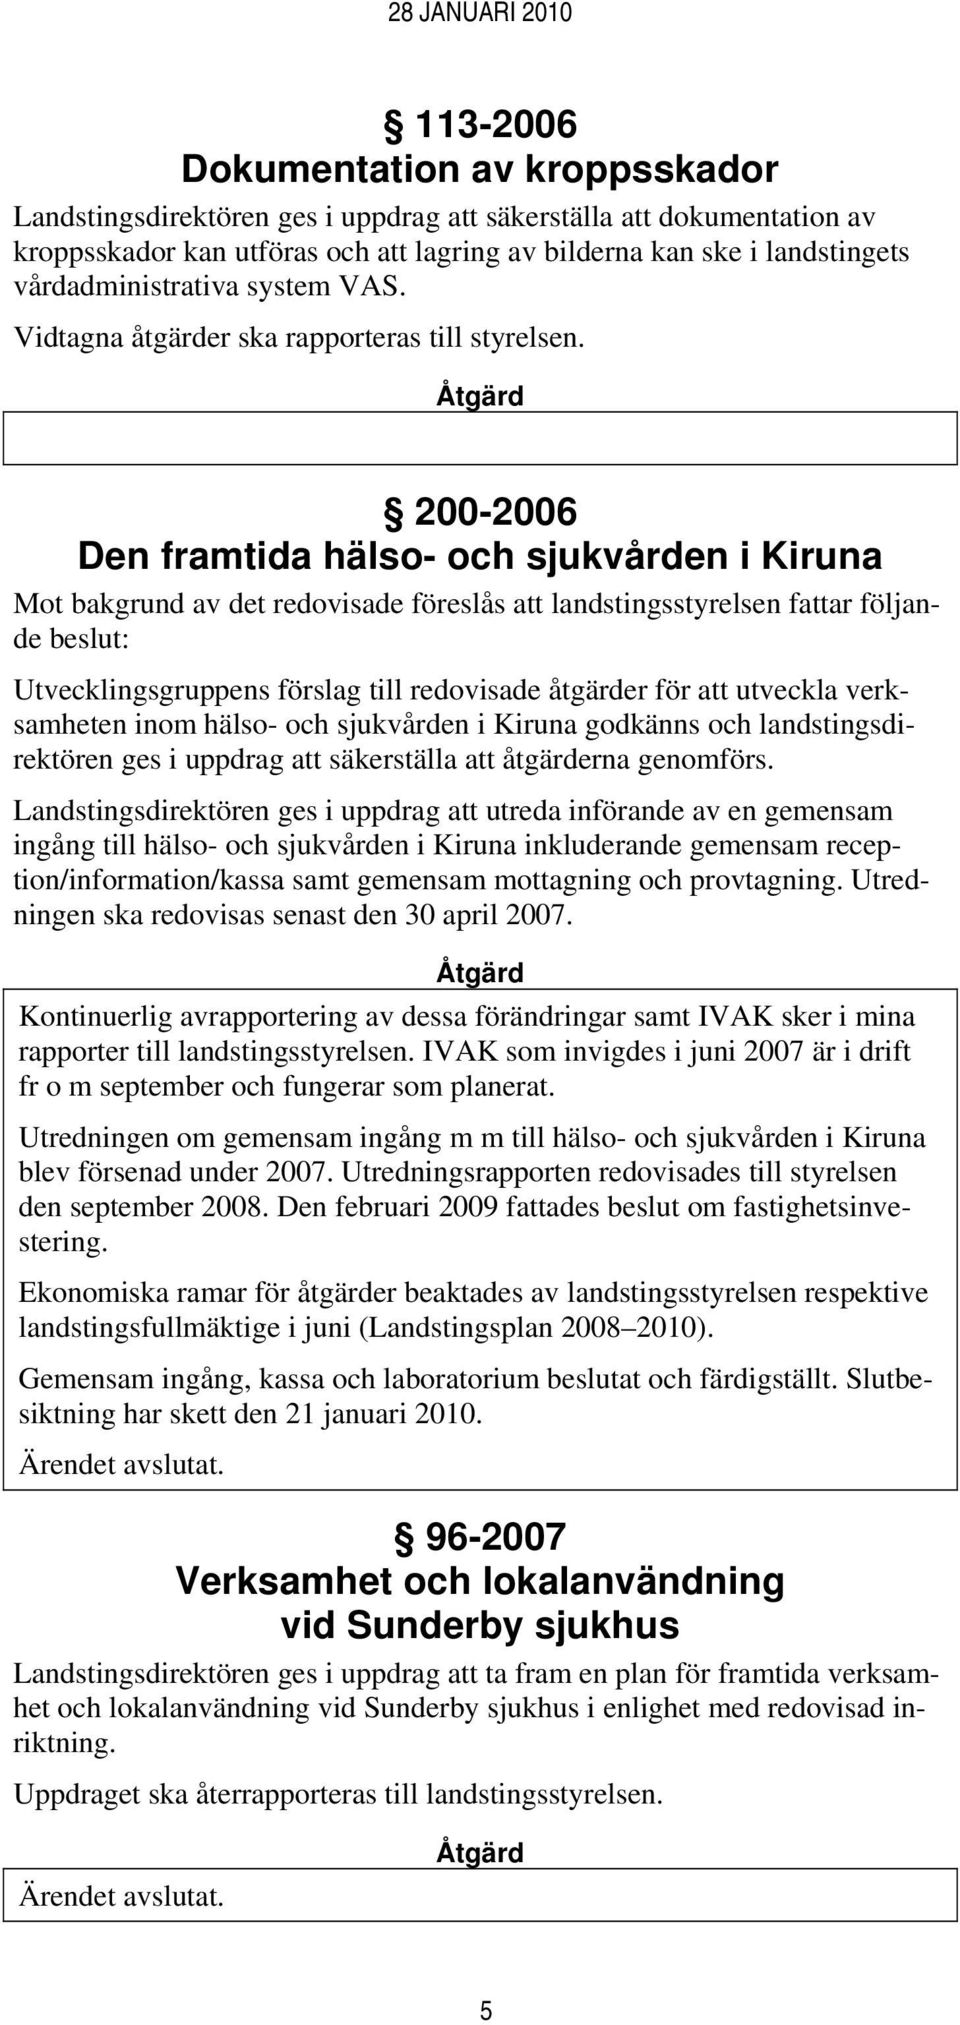 200-2006 Den framtida hälso- och sjukvården i Kiruna Mot bakgrund av det redovisade föreslås att landstingsstyrelsen fattar följande beslut: Utvecklingsgruppens förslag till redovisade åtgärder för